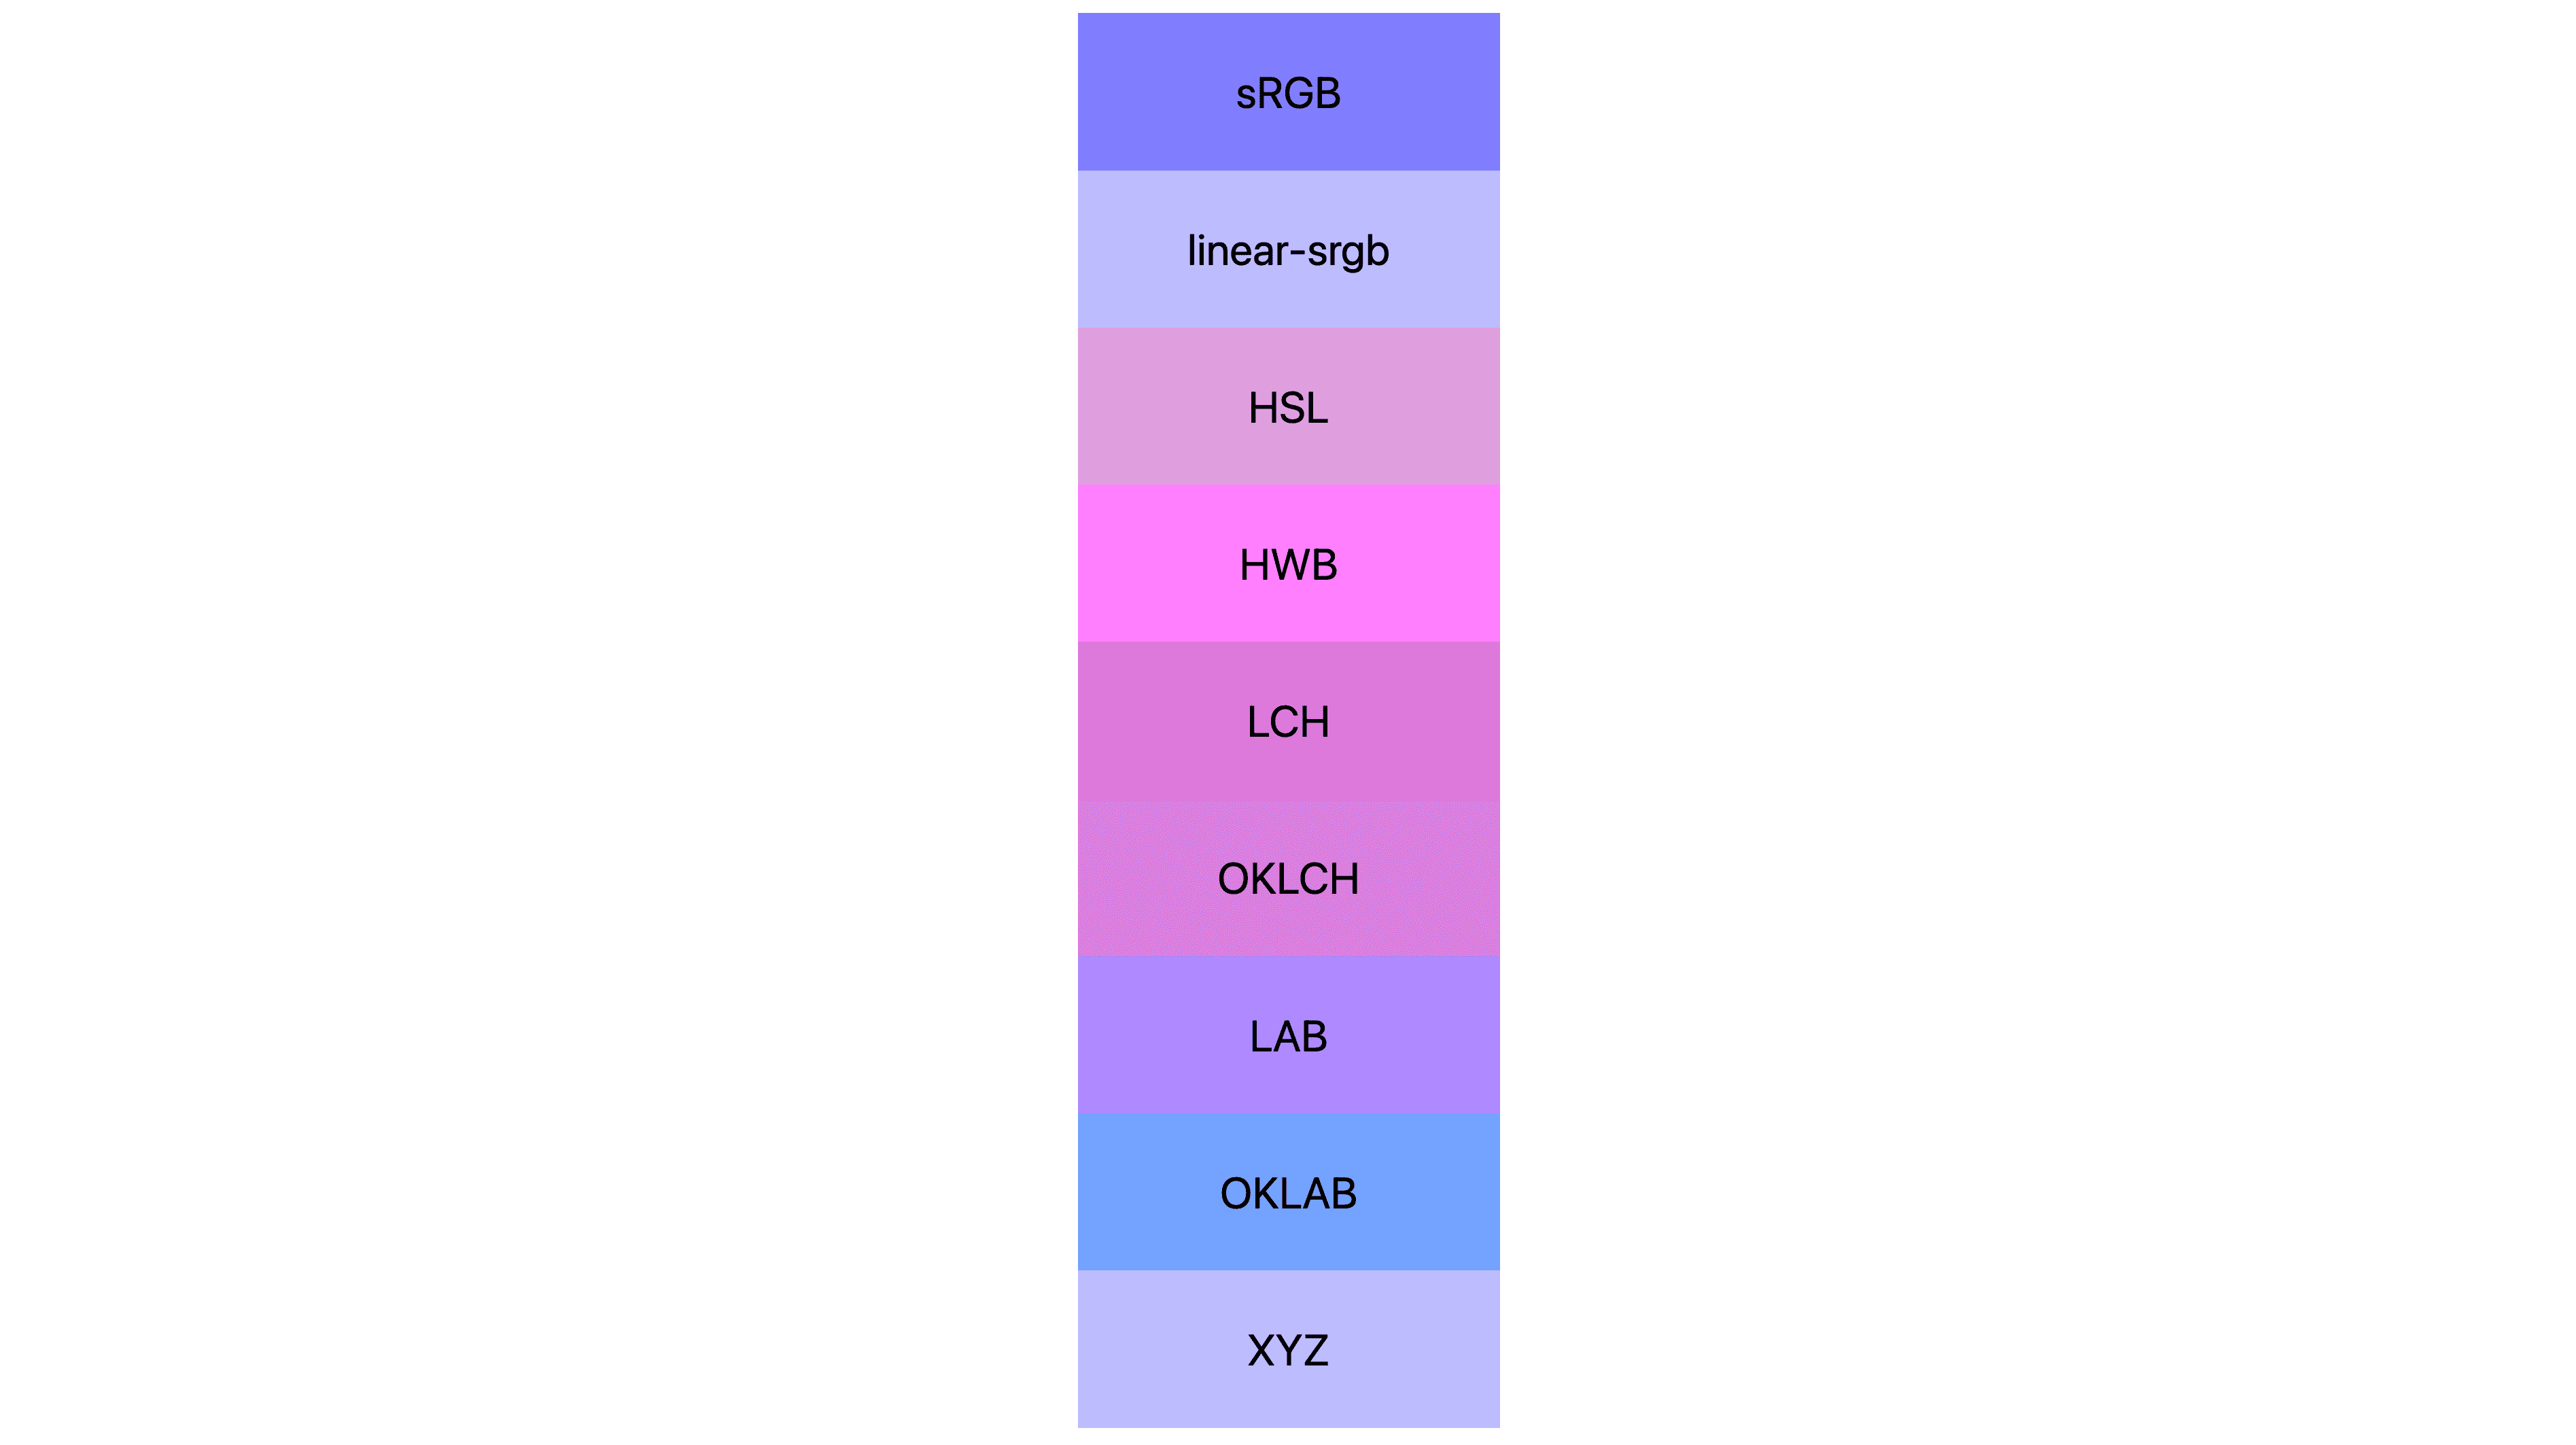 7 spazi colore (ssad, linear-sgsuite, lch, oklch, lab, oklab, xyz), ognuno con risultati diversi. Molti sono rosa o viola, mentre altri sono ancora blu.